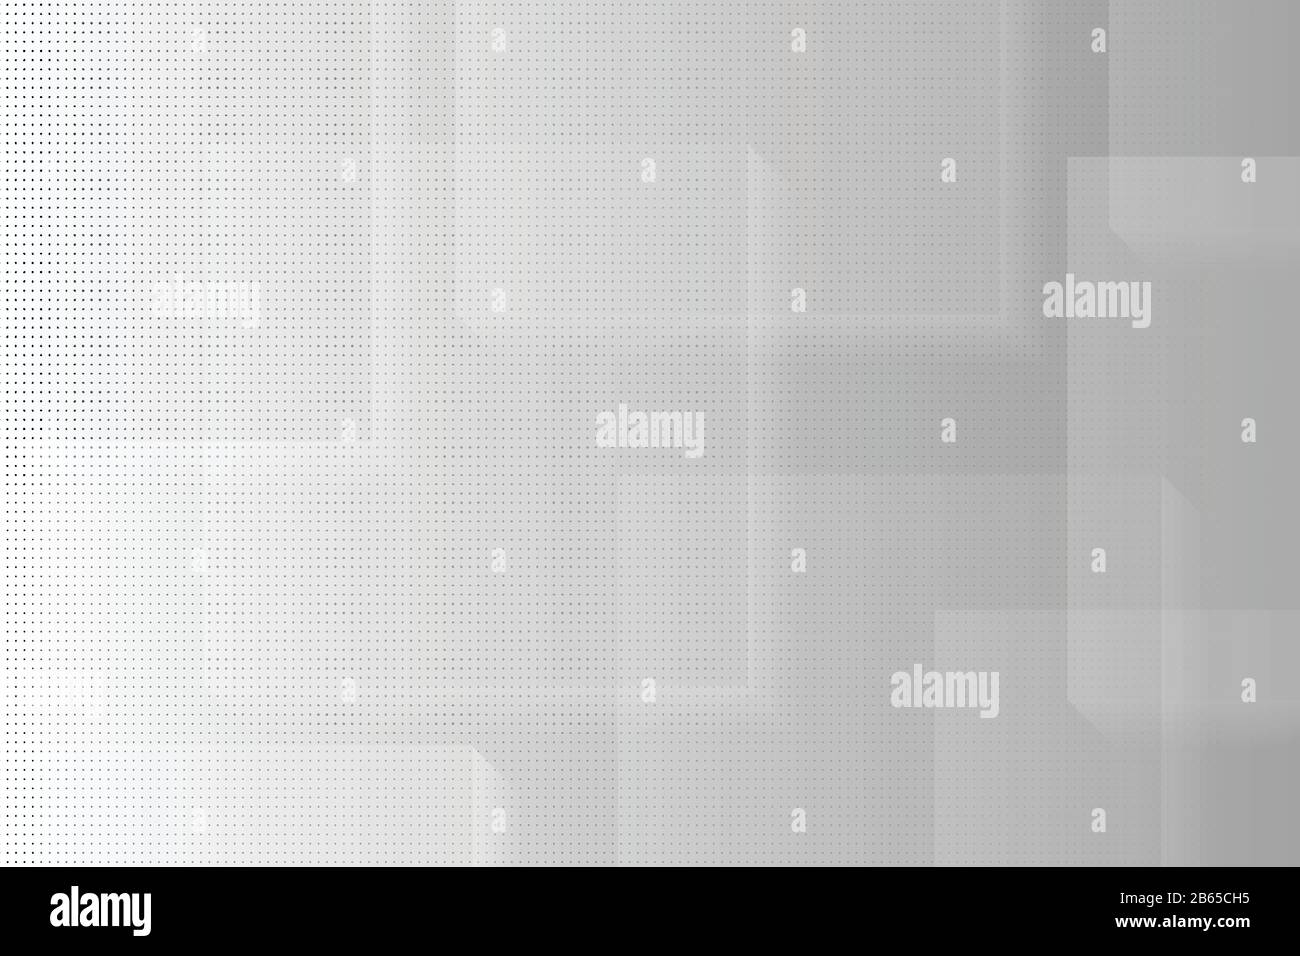 Abstrakter, grauer und weißer, quadratischer Hintergrund mit dekorativem Hintergrund. Verwendung für Werbung, Poster, Vorlagendesign, Anzeigenabbildung Vektor eps10 Stock Vektor